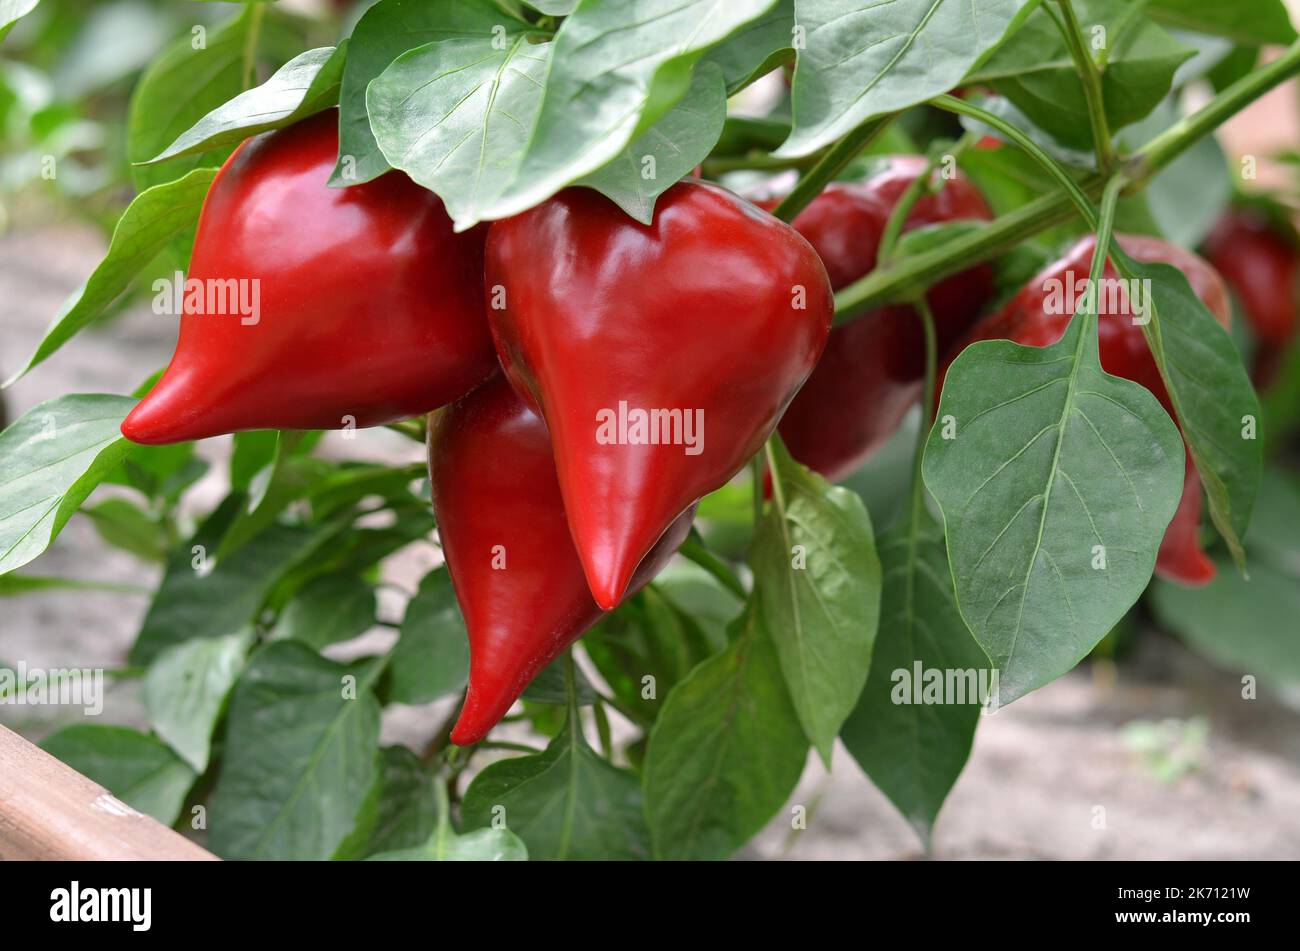 Nahaufnahme von reifem rotem Pfeffer zwischen grünen Blättern, die im Gemüsegarten wachsen. Konzept des Anbaus Ihrer eigenen Bio-Lebensmittel. Stockfoto